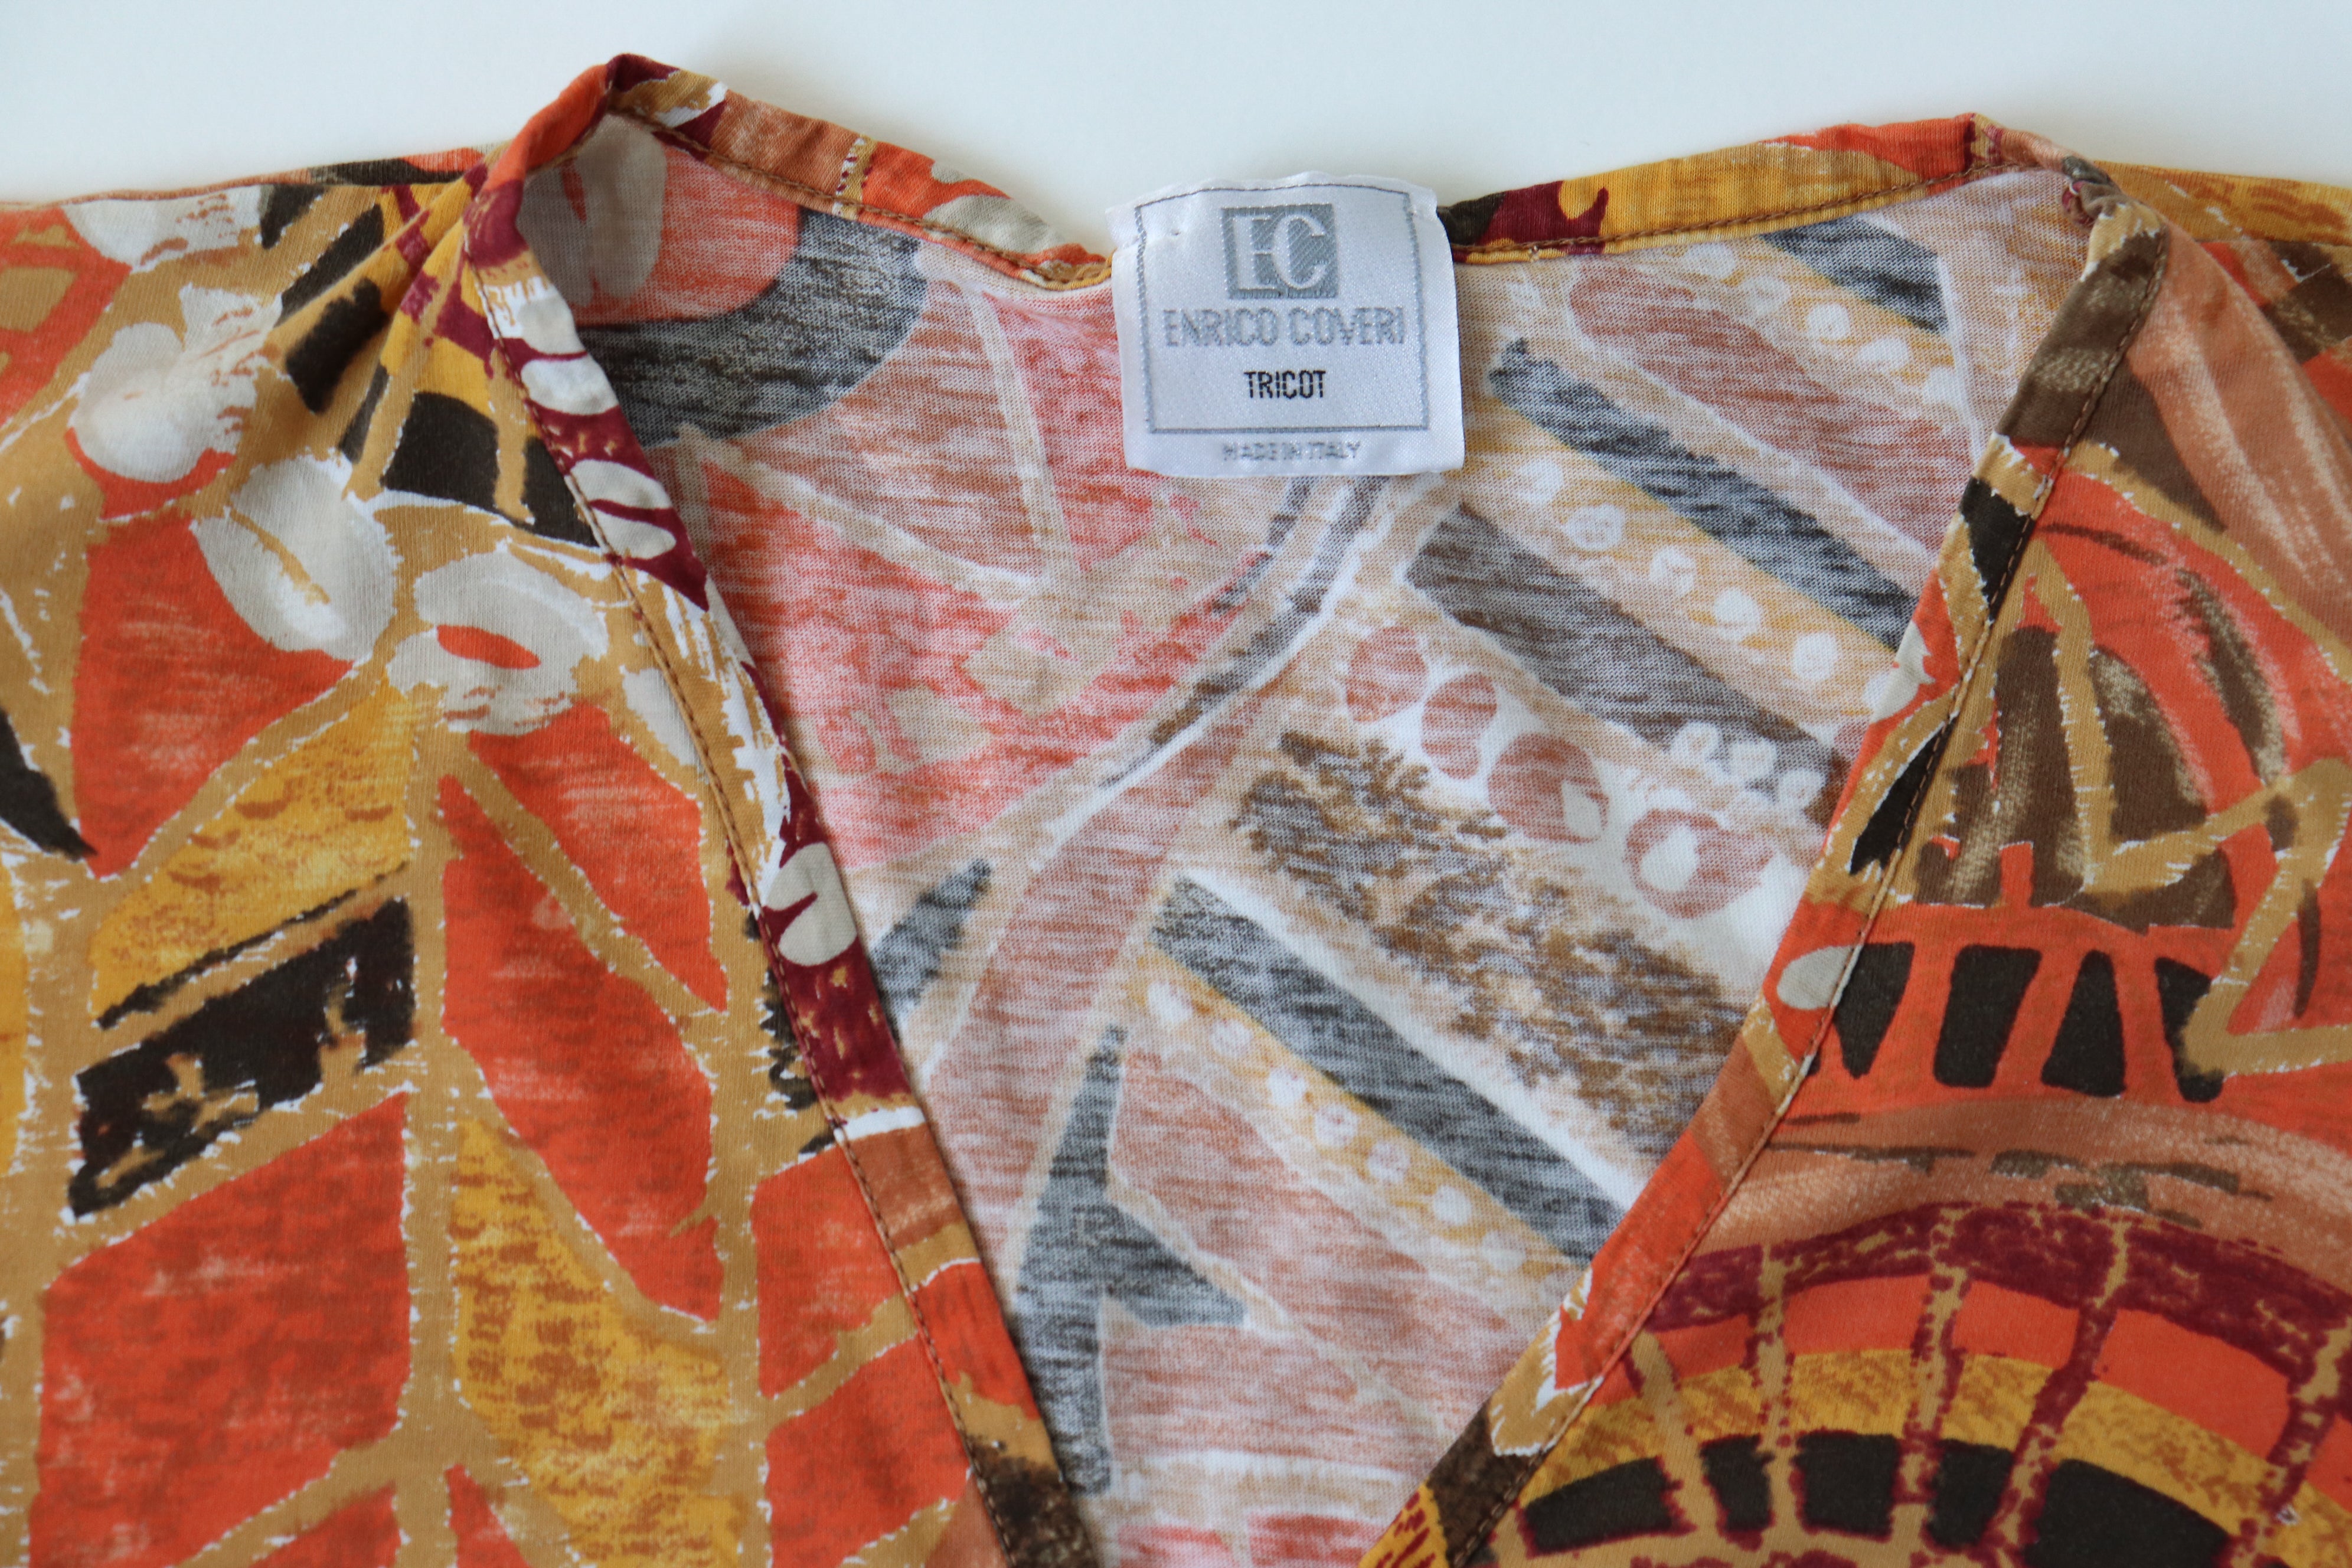 Enrico Coveri Vintage  T-Shirt - V-Neck - 1980s Orange Patterned - Womens - M / UK 12